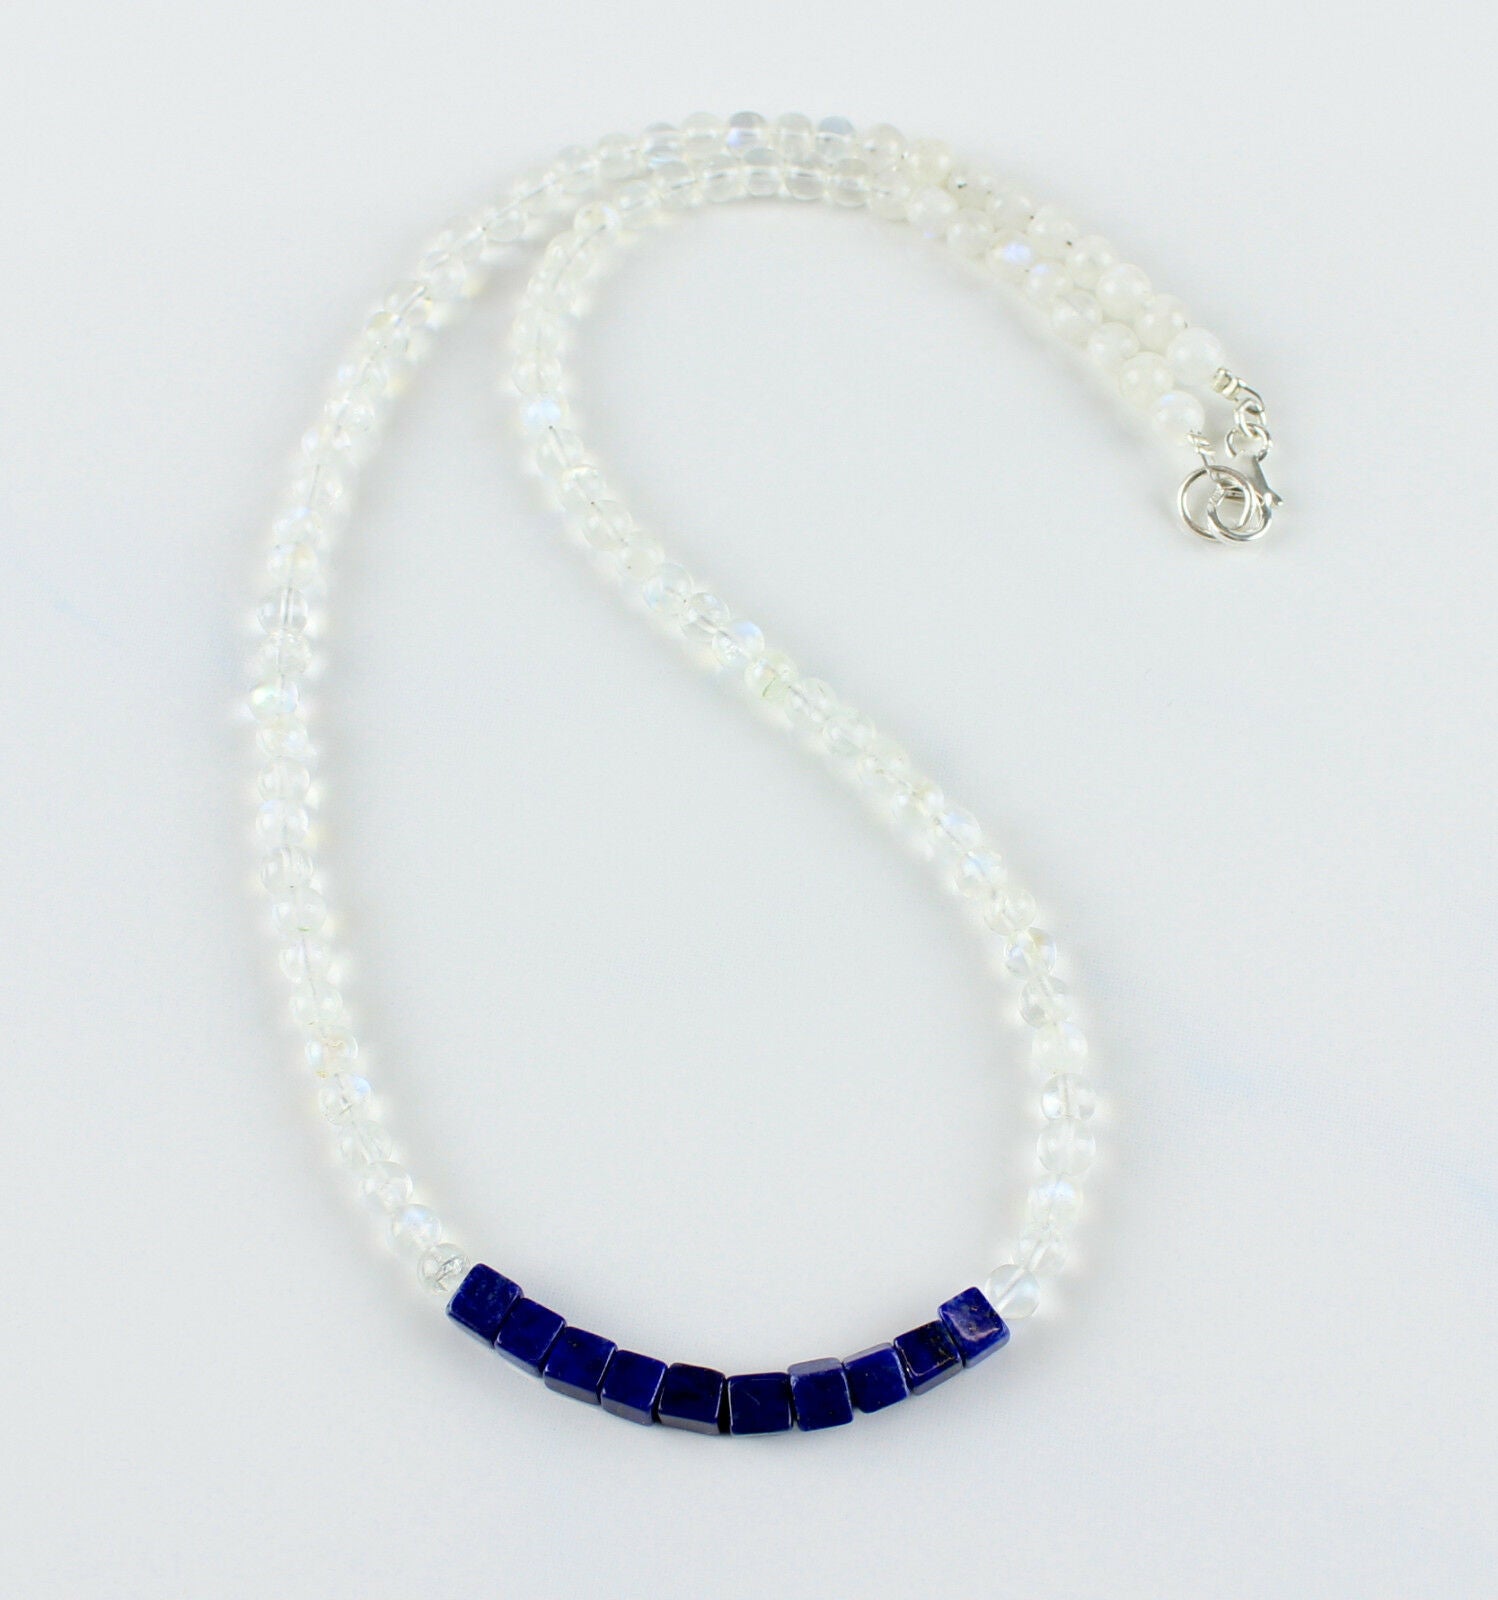 Regenbogen Mondstein mit Lapis Lazuli Halskette in 925 Silber Verschluss